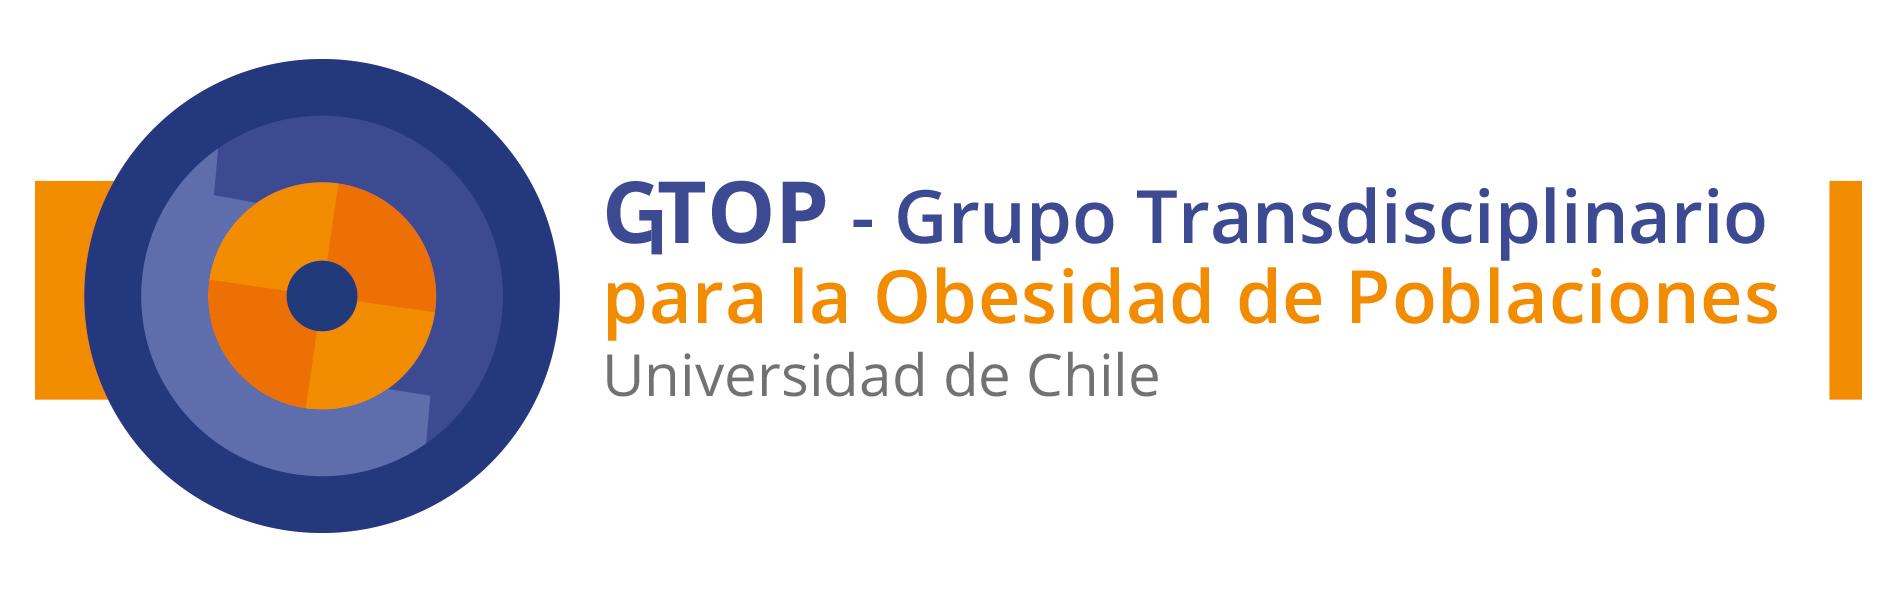 Grupo de Investigación Transdisciplinario en Obesidad de Poblaciones (GTOP), conformado por académicos/as y estudiantes de postgrado de la Universidad de Chile provenientes de distintas Facultades.